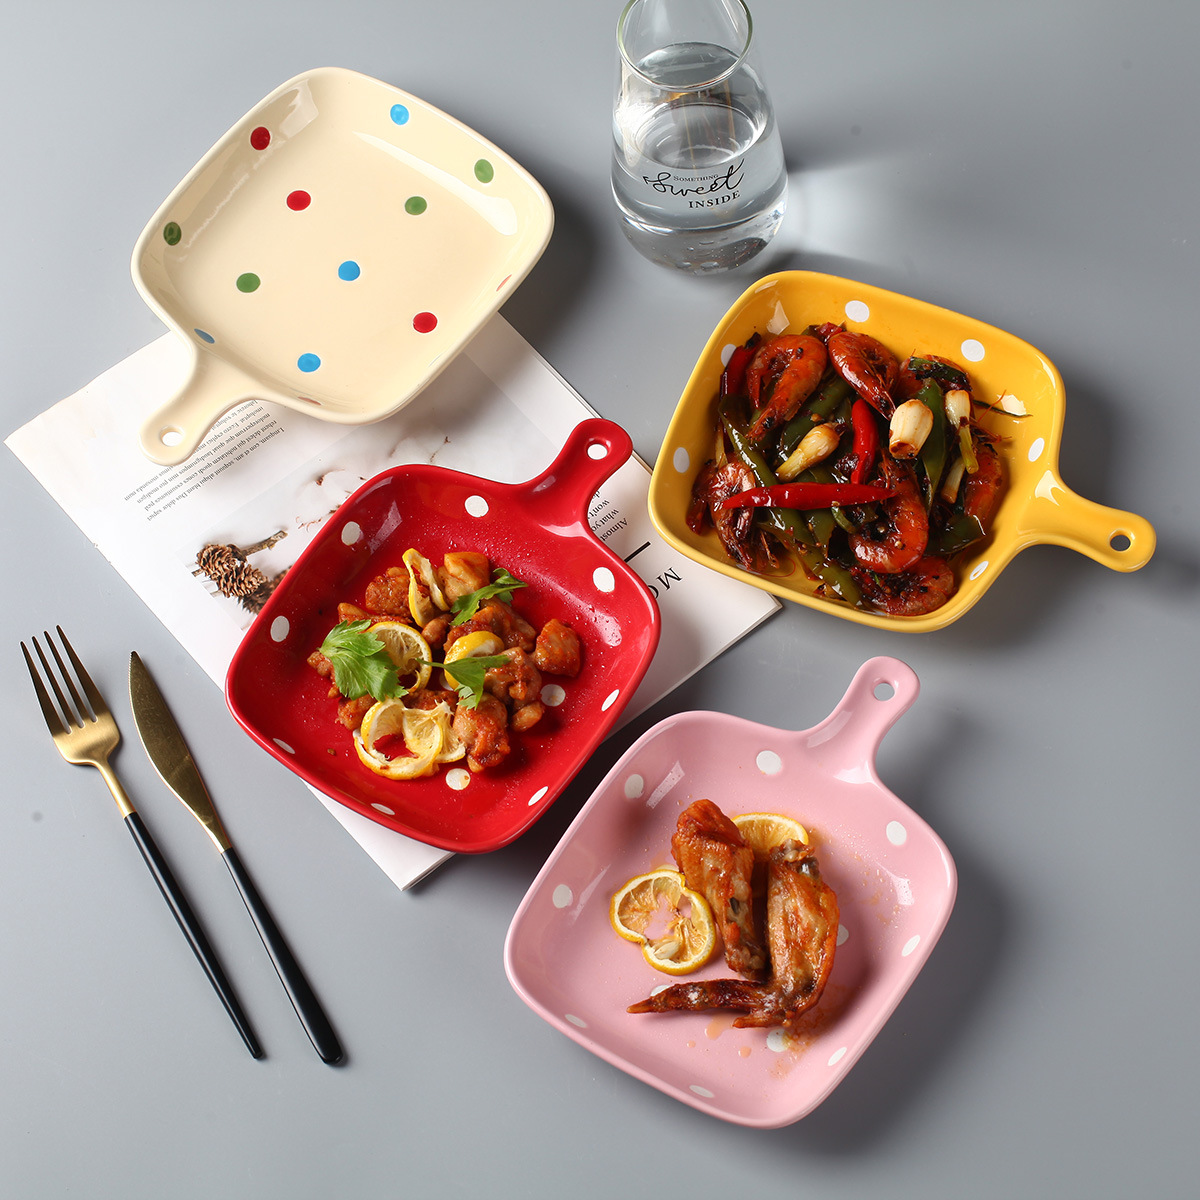 歐式復古風陶瓷烤盤單柄波點設計適合早餐擺拍烘焙芝士焗飯必備 (8.3折)